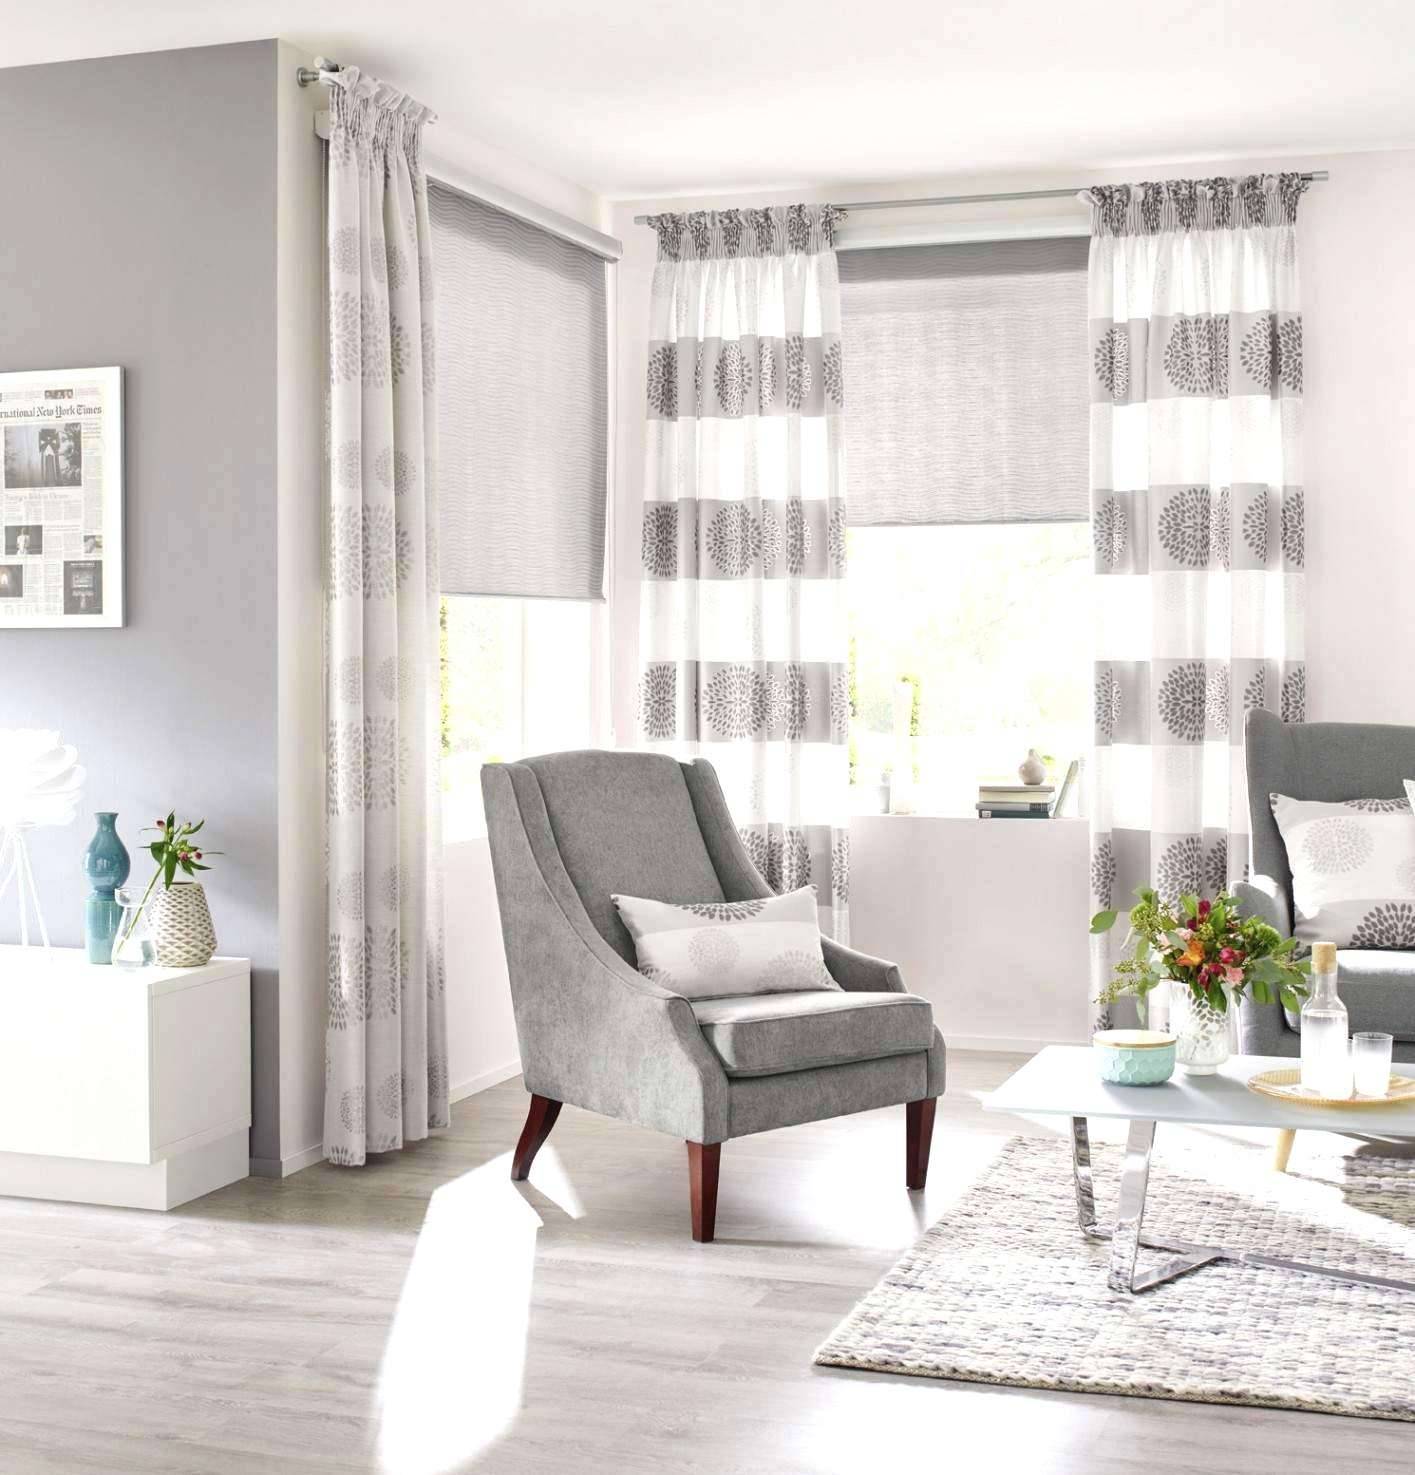 wohnzimmer ideen elegant elegant wohnzimmer fenster gardinen neu plissee wohnzimmer 0d design ideen of wohnzimmer ideen elegant